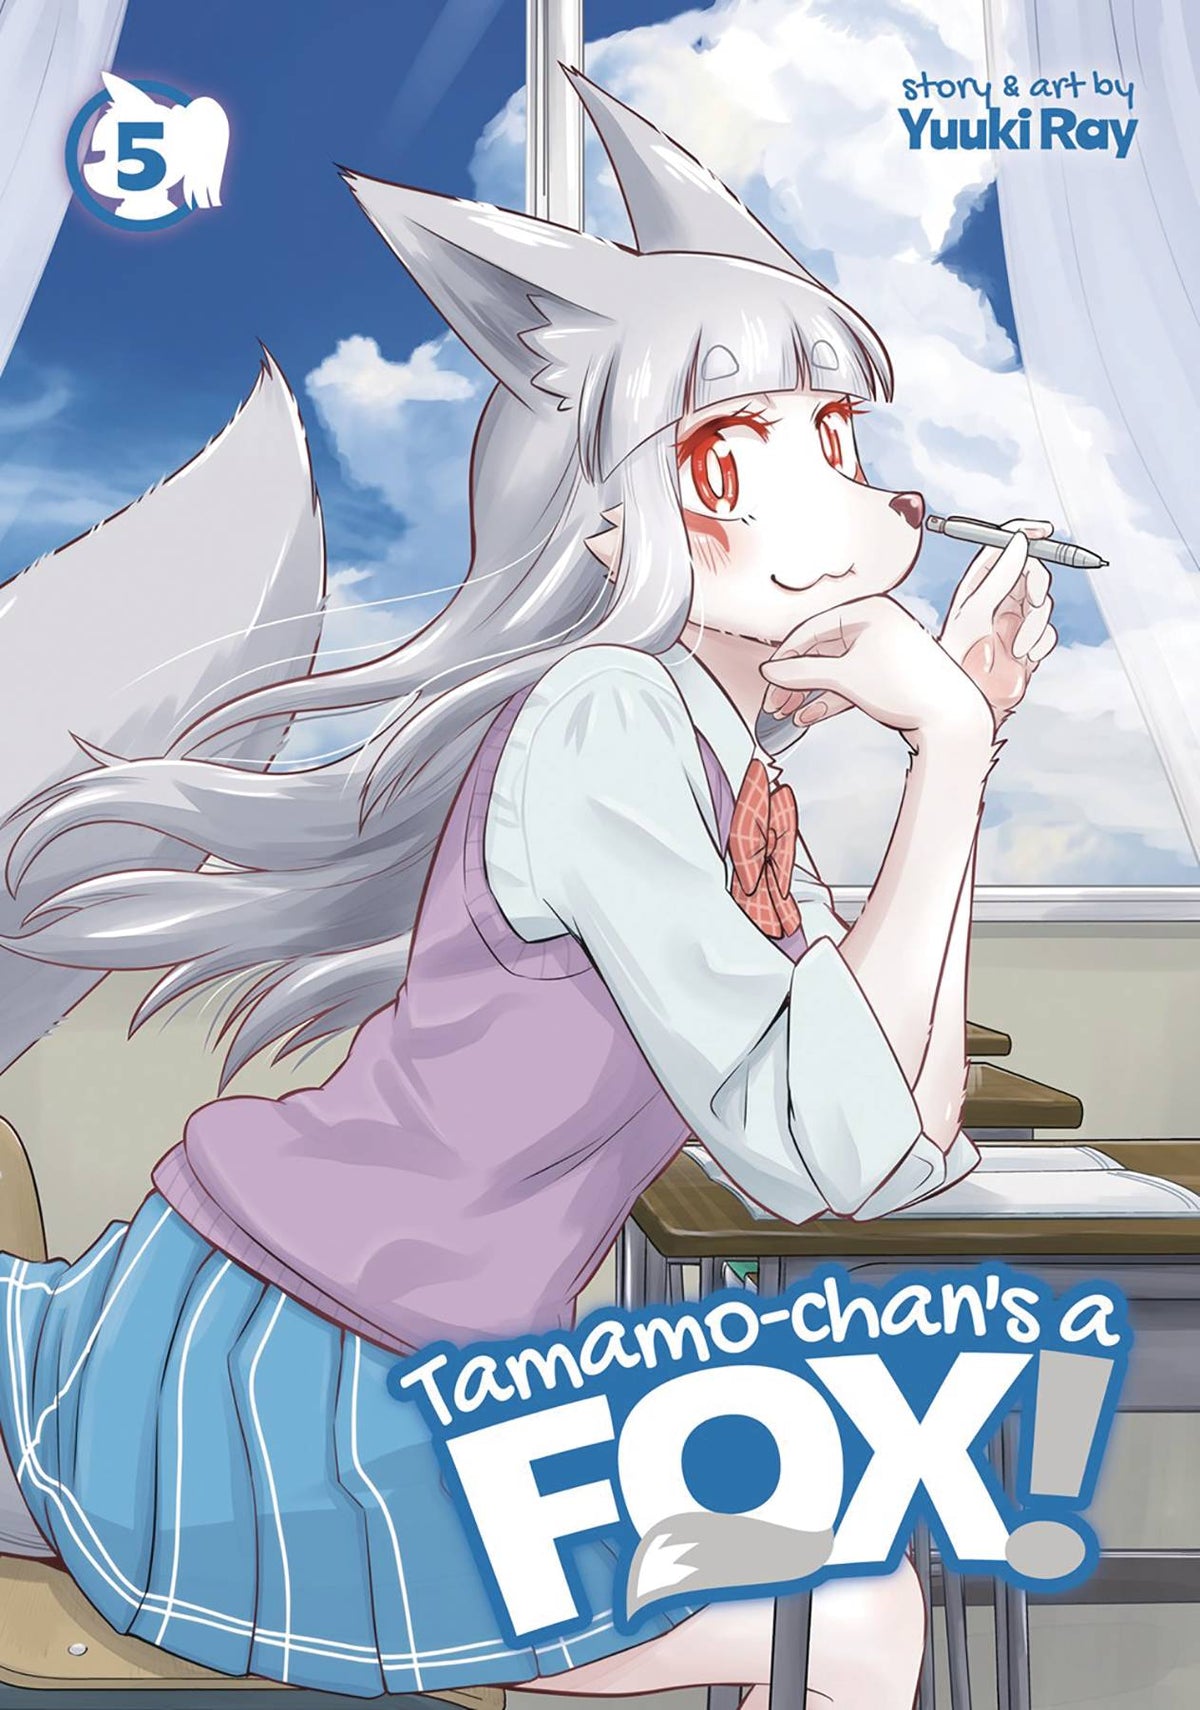 TAMAMO CHANS A FOX GN VOL 05 - Third Eye